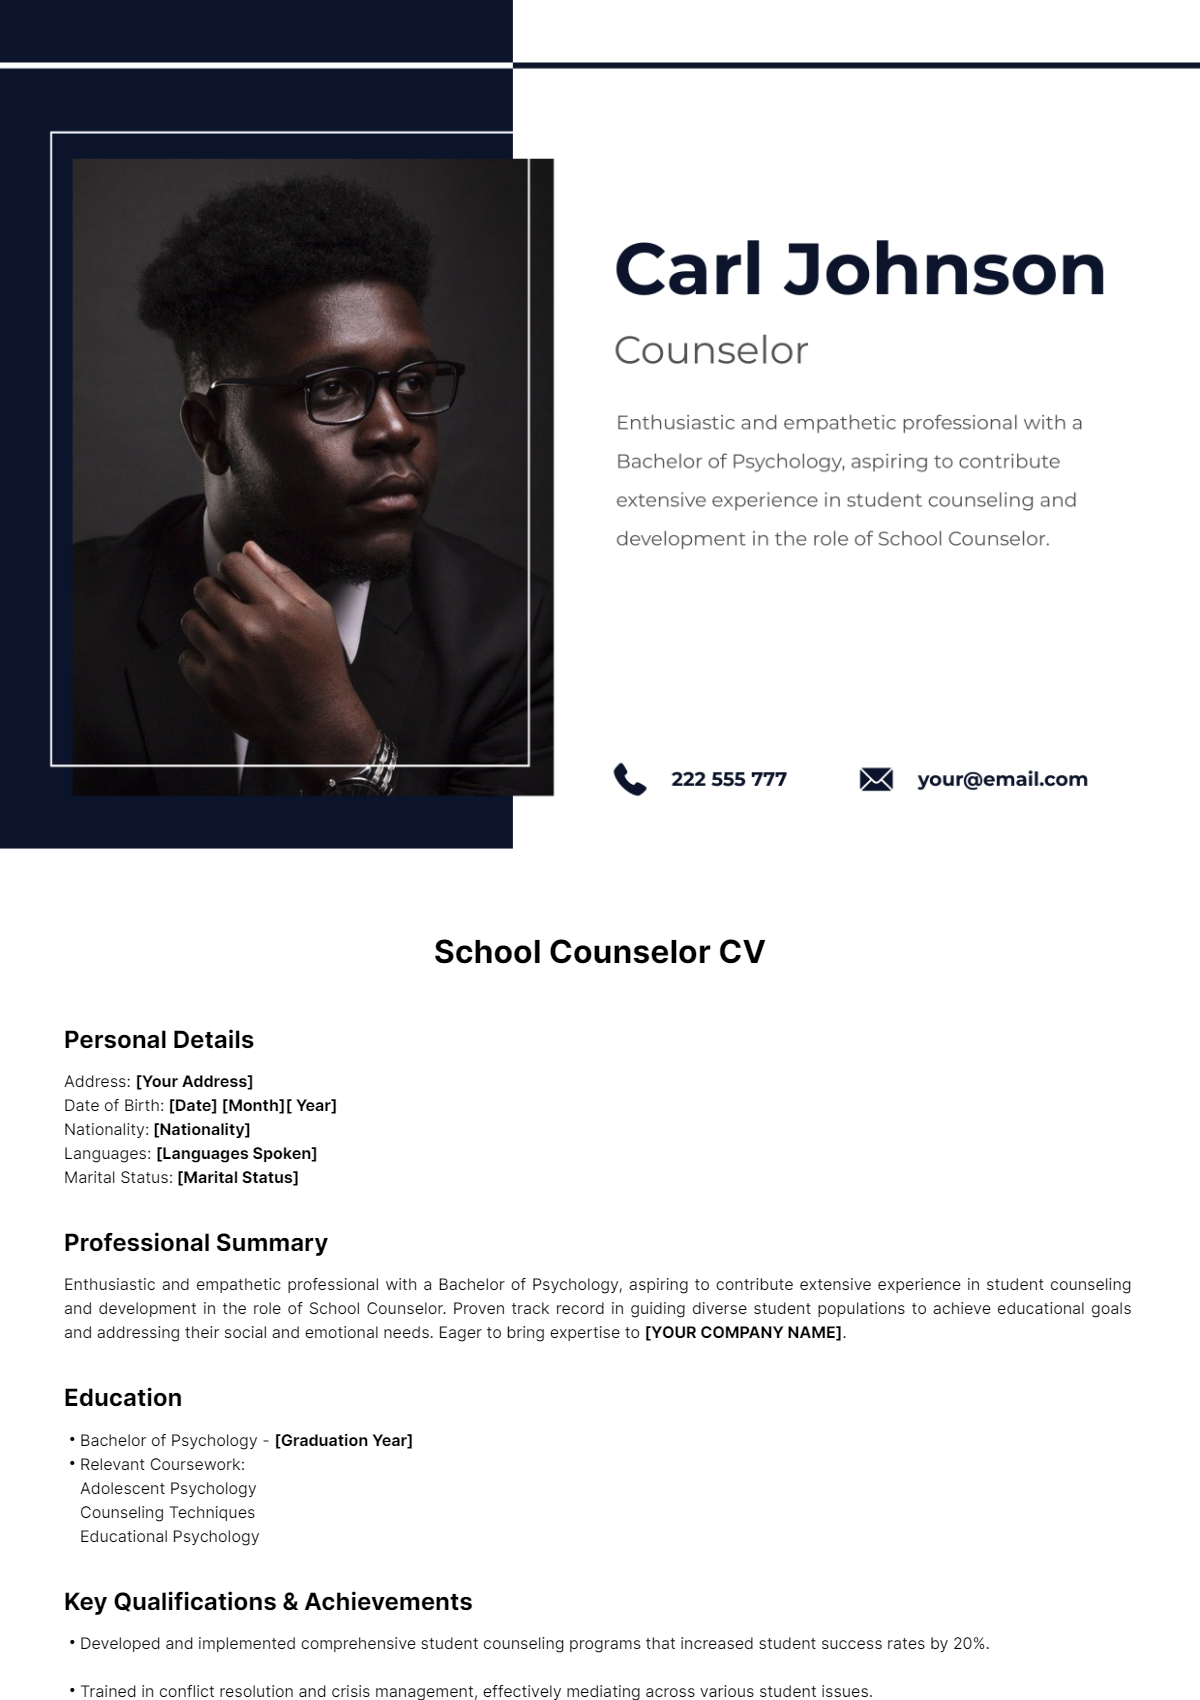 School Counselor CV Template